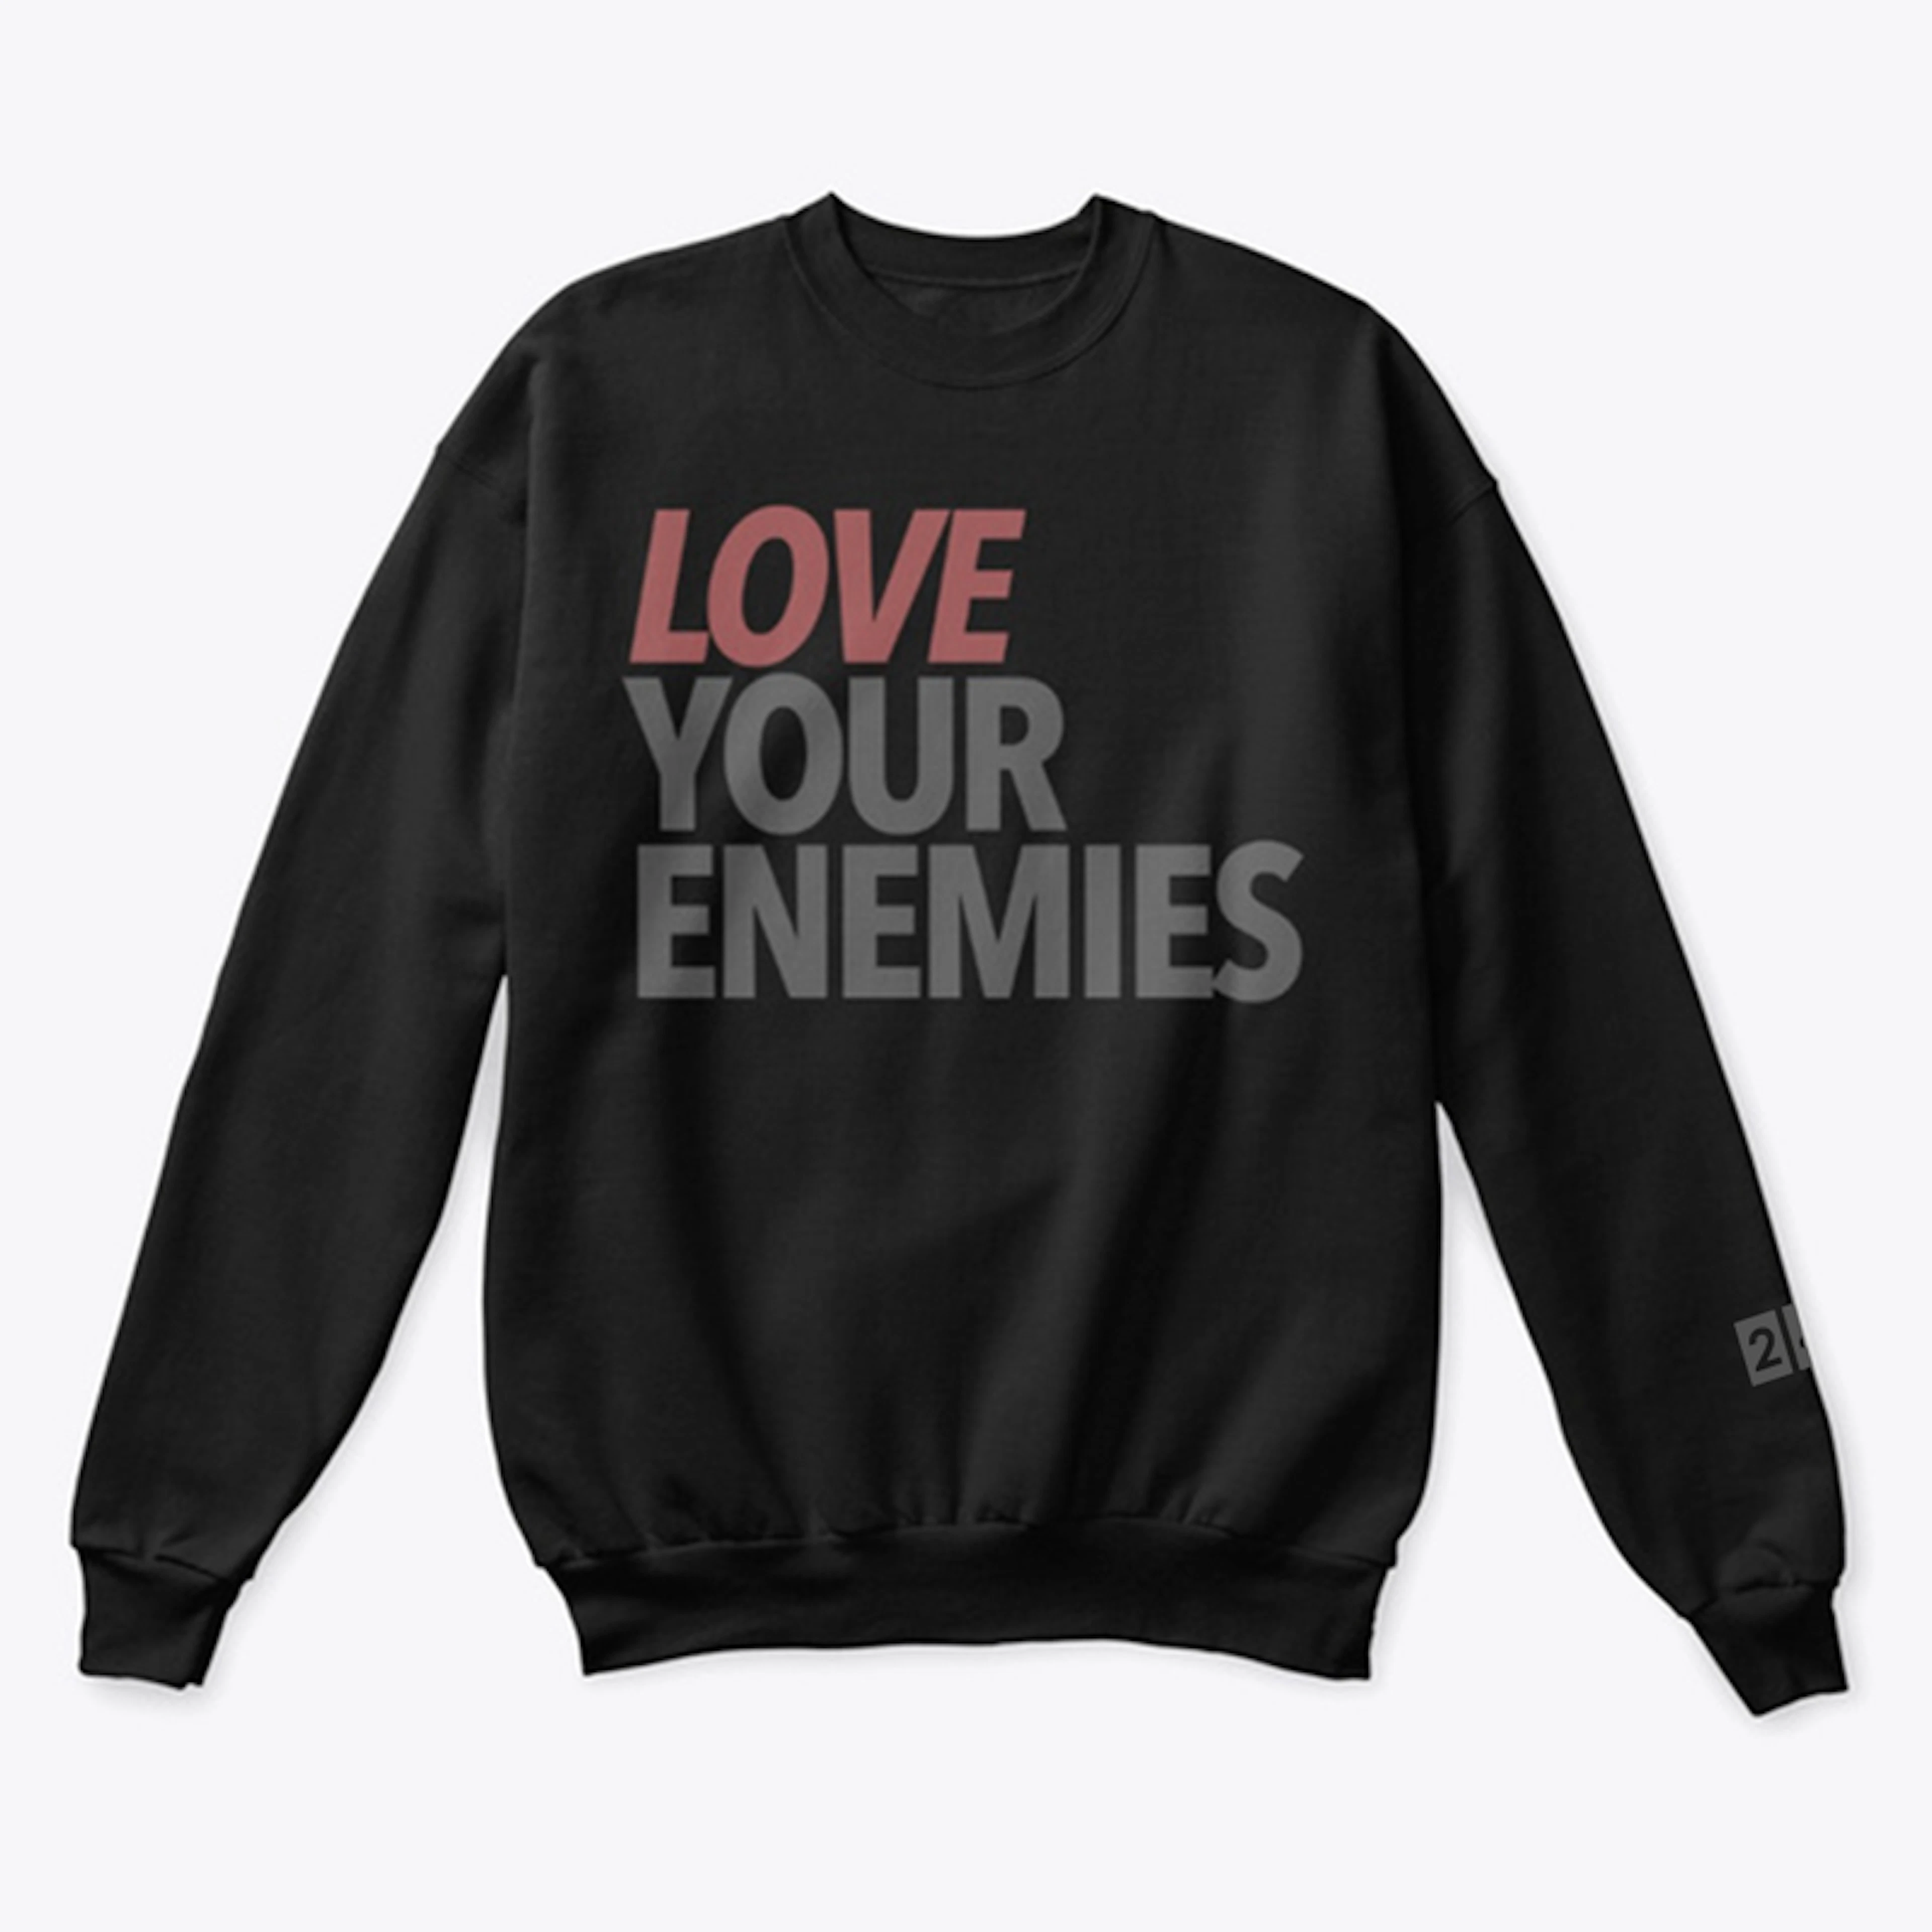 Love Your Enemies - Sweatshirt